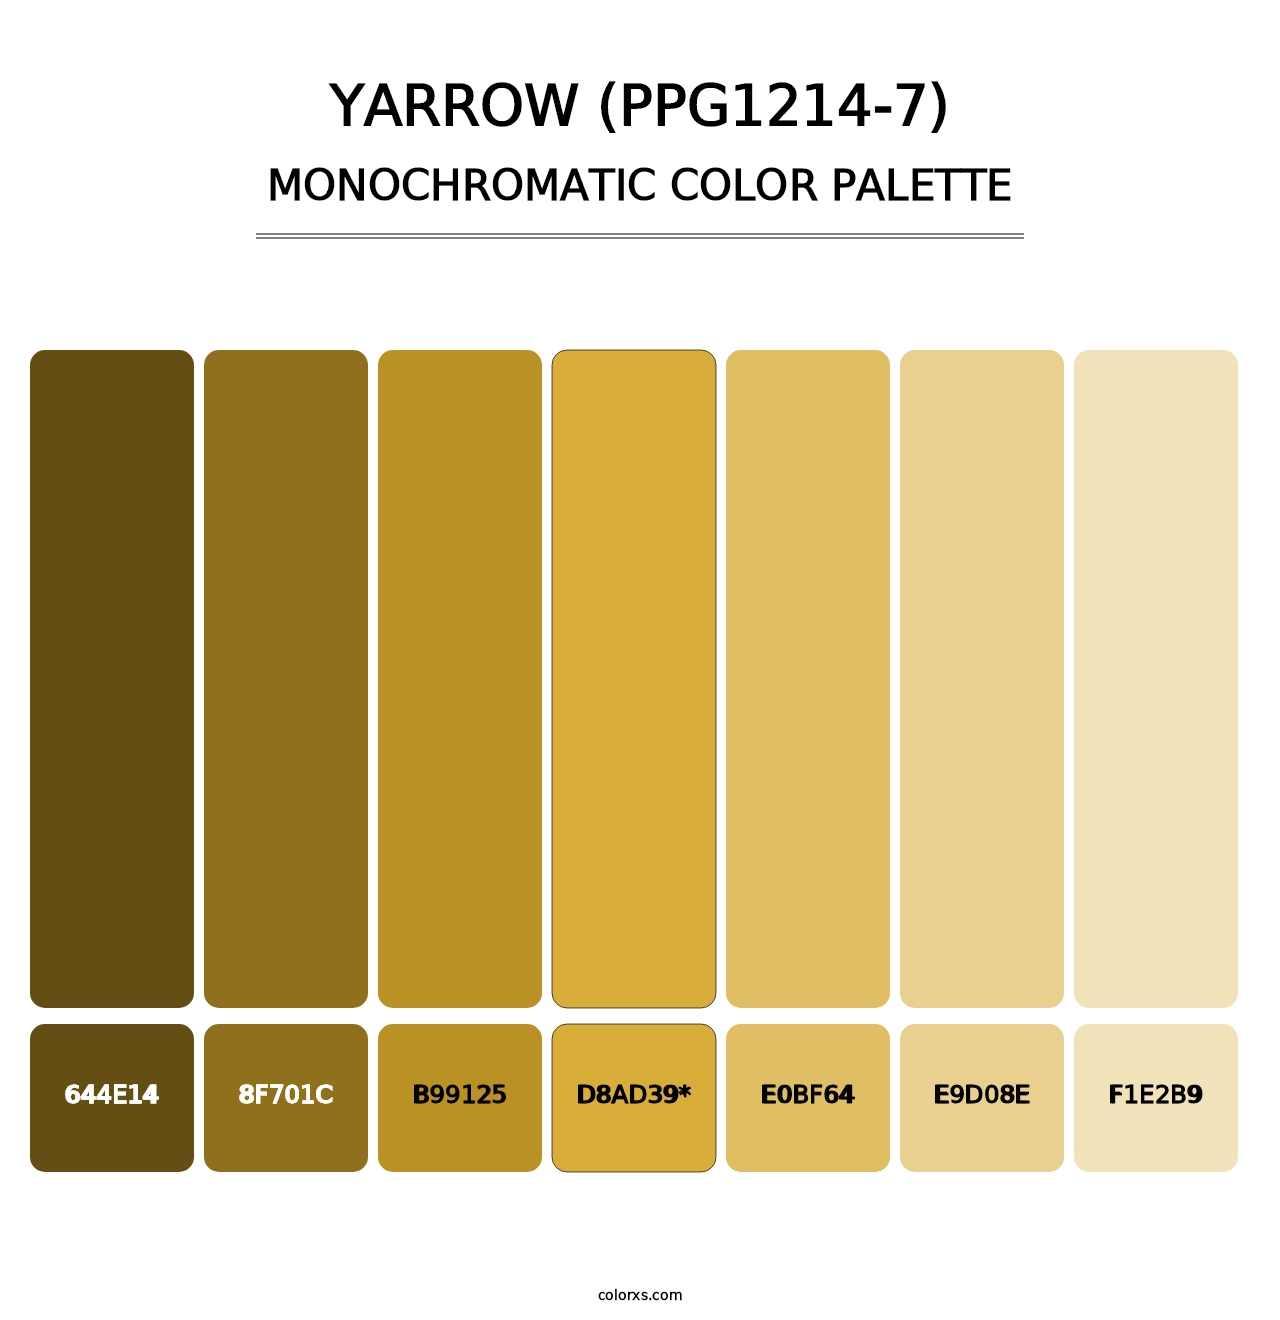 Yarrow (PPG1214-7) - Monochromatic Color Palette